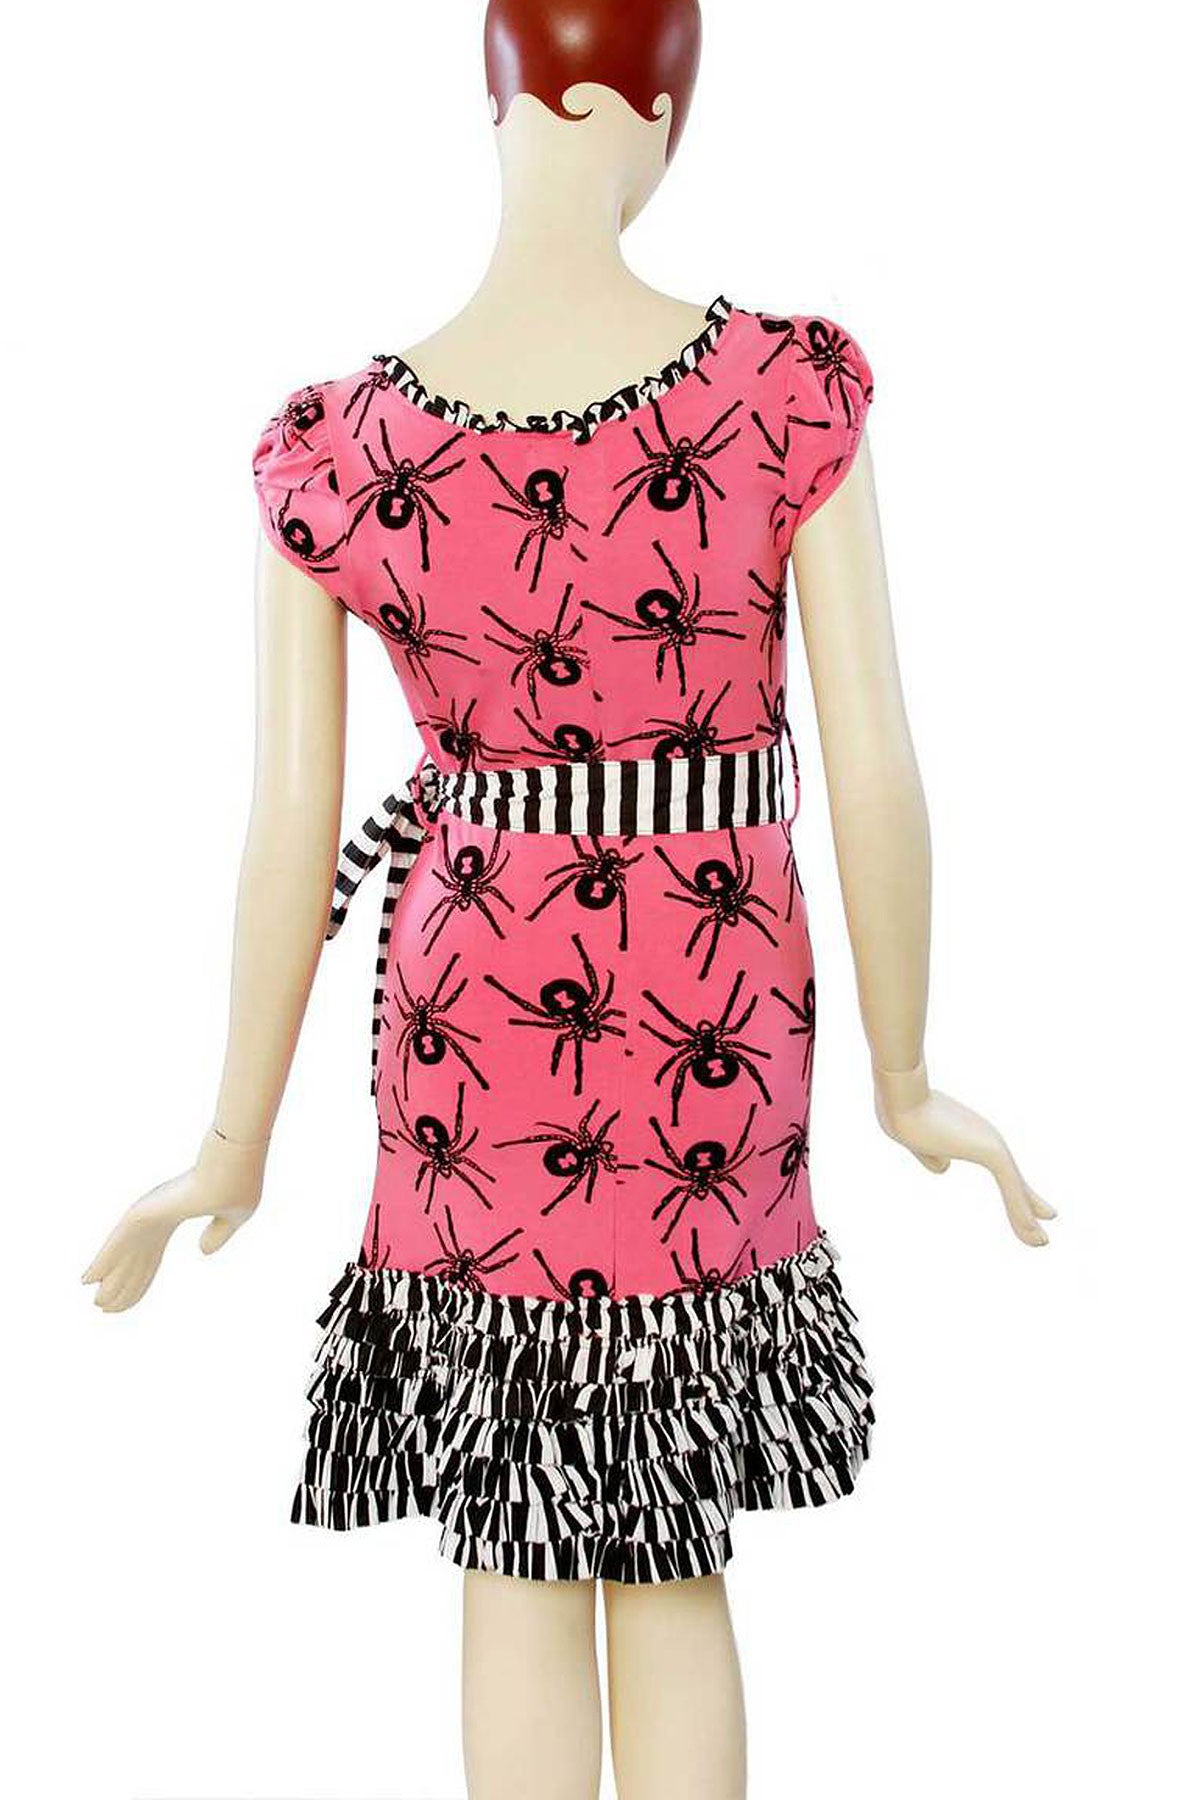 Darling Widow Spider Dress - shopjessicalouise.com